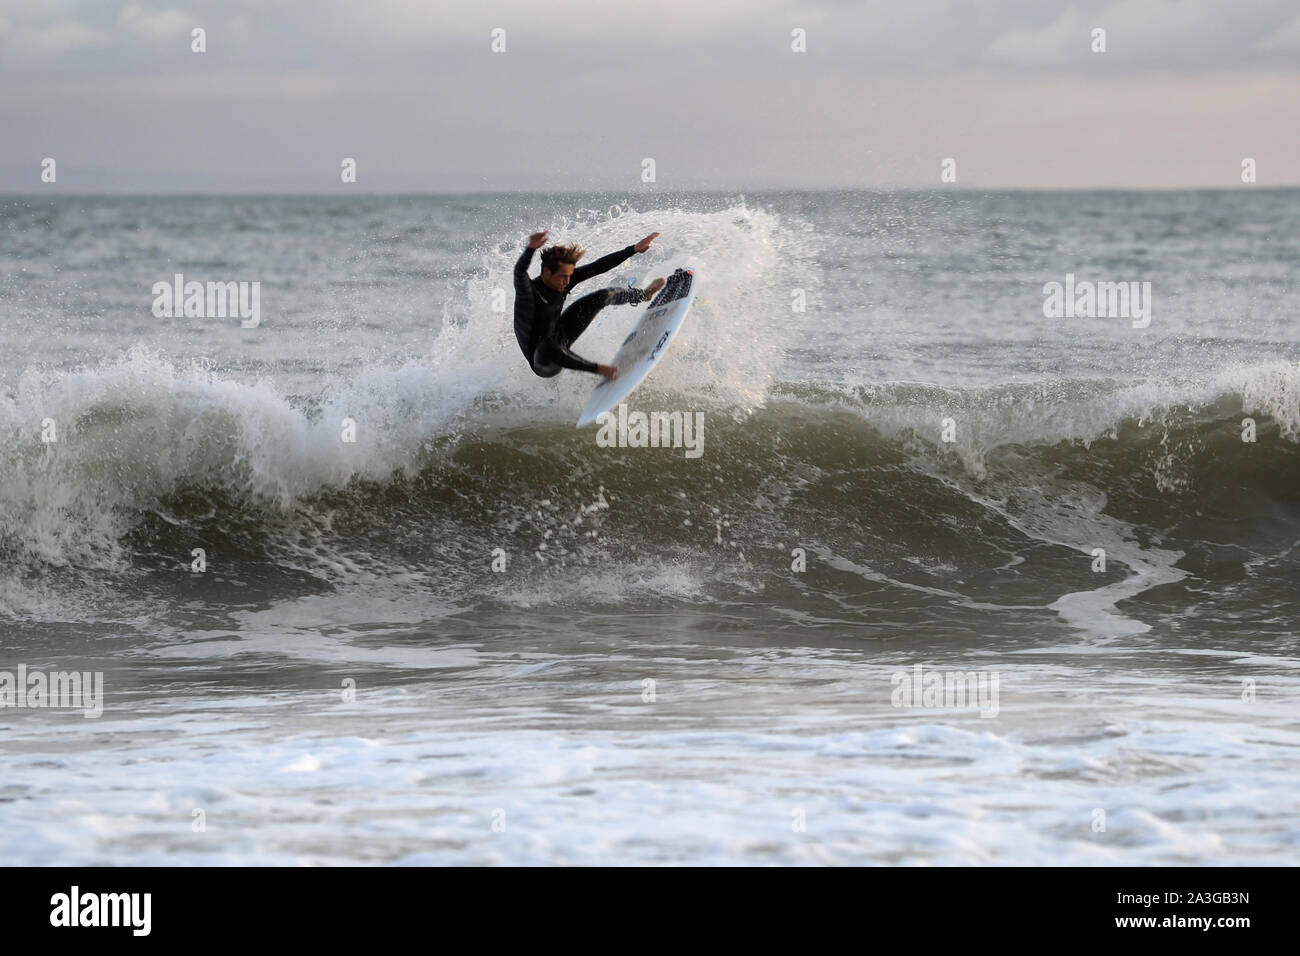 Surfeur vole loin du sommet de la vague - la manœuvre aérienne est susceptible de marquer fortement dans les prochains Jeux olympiques Banque D'Images